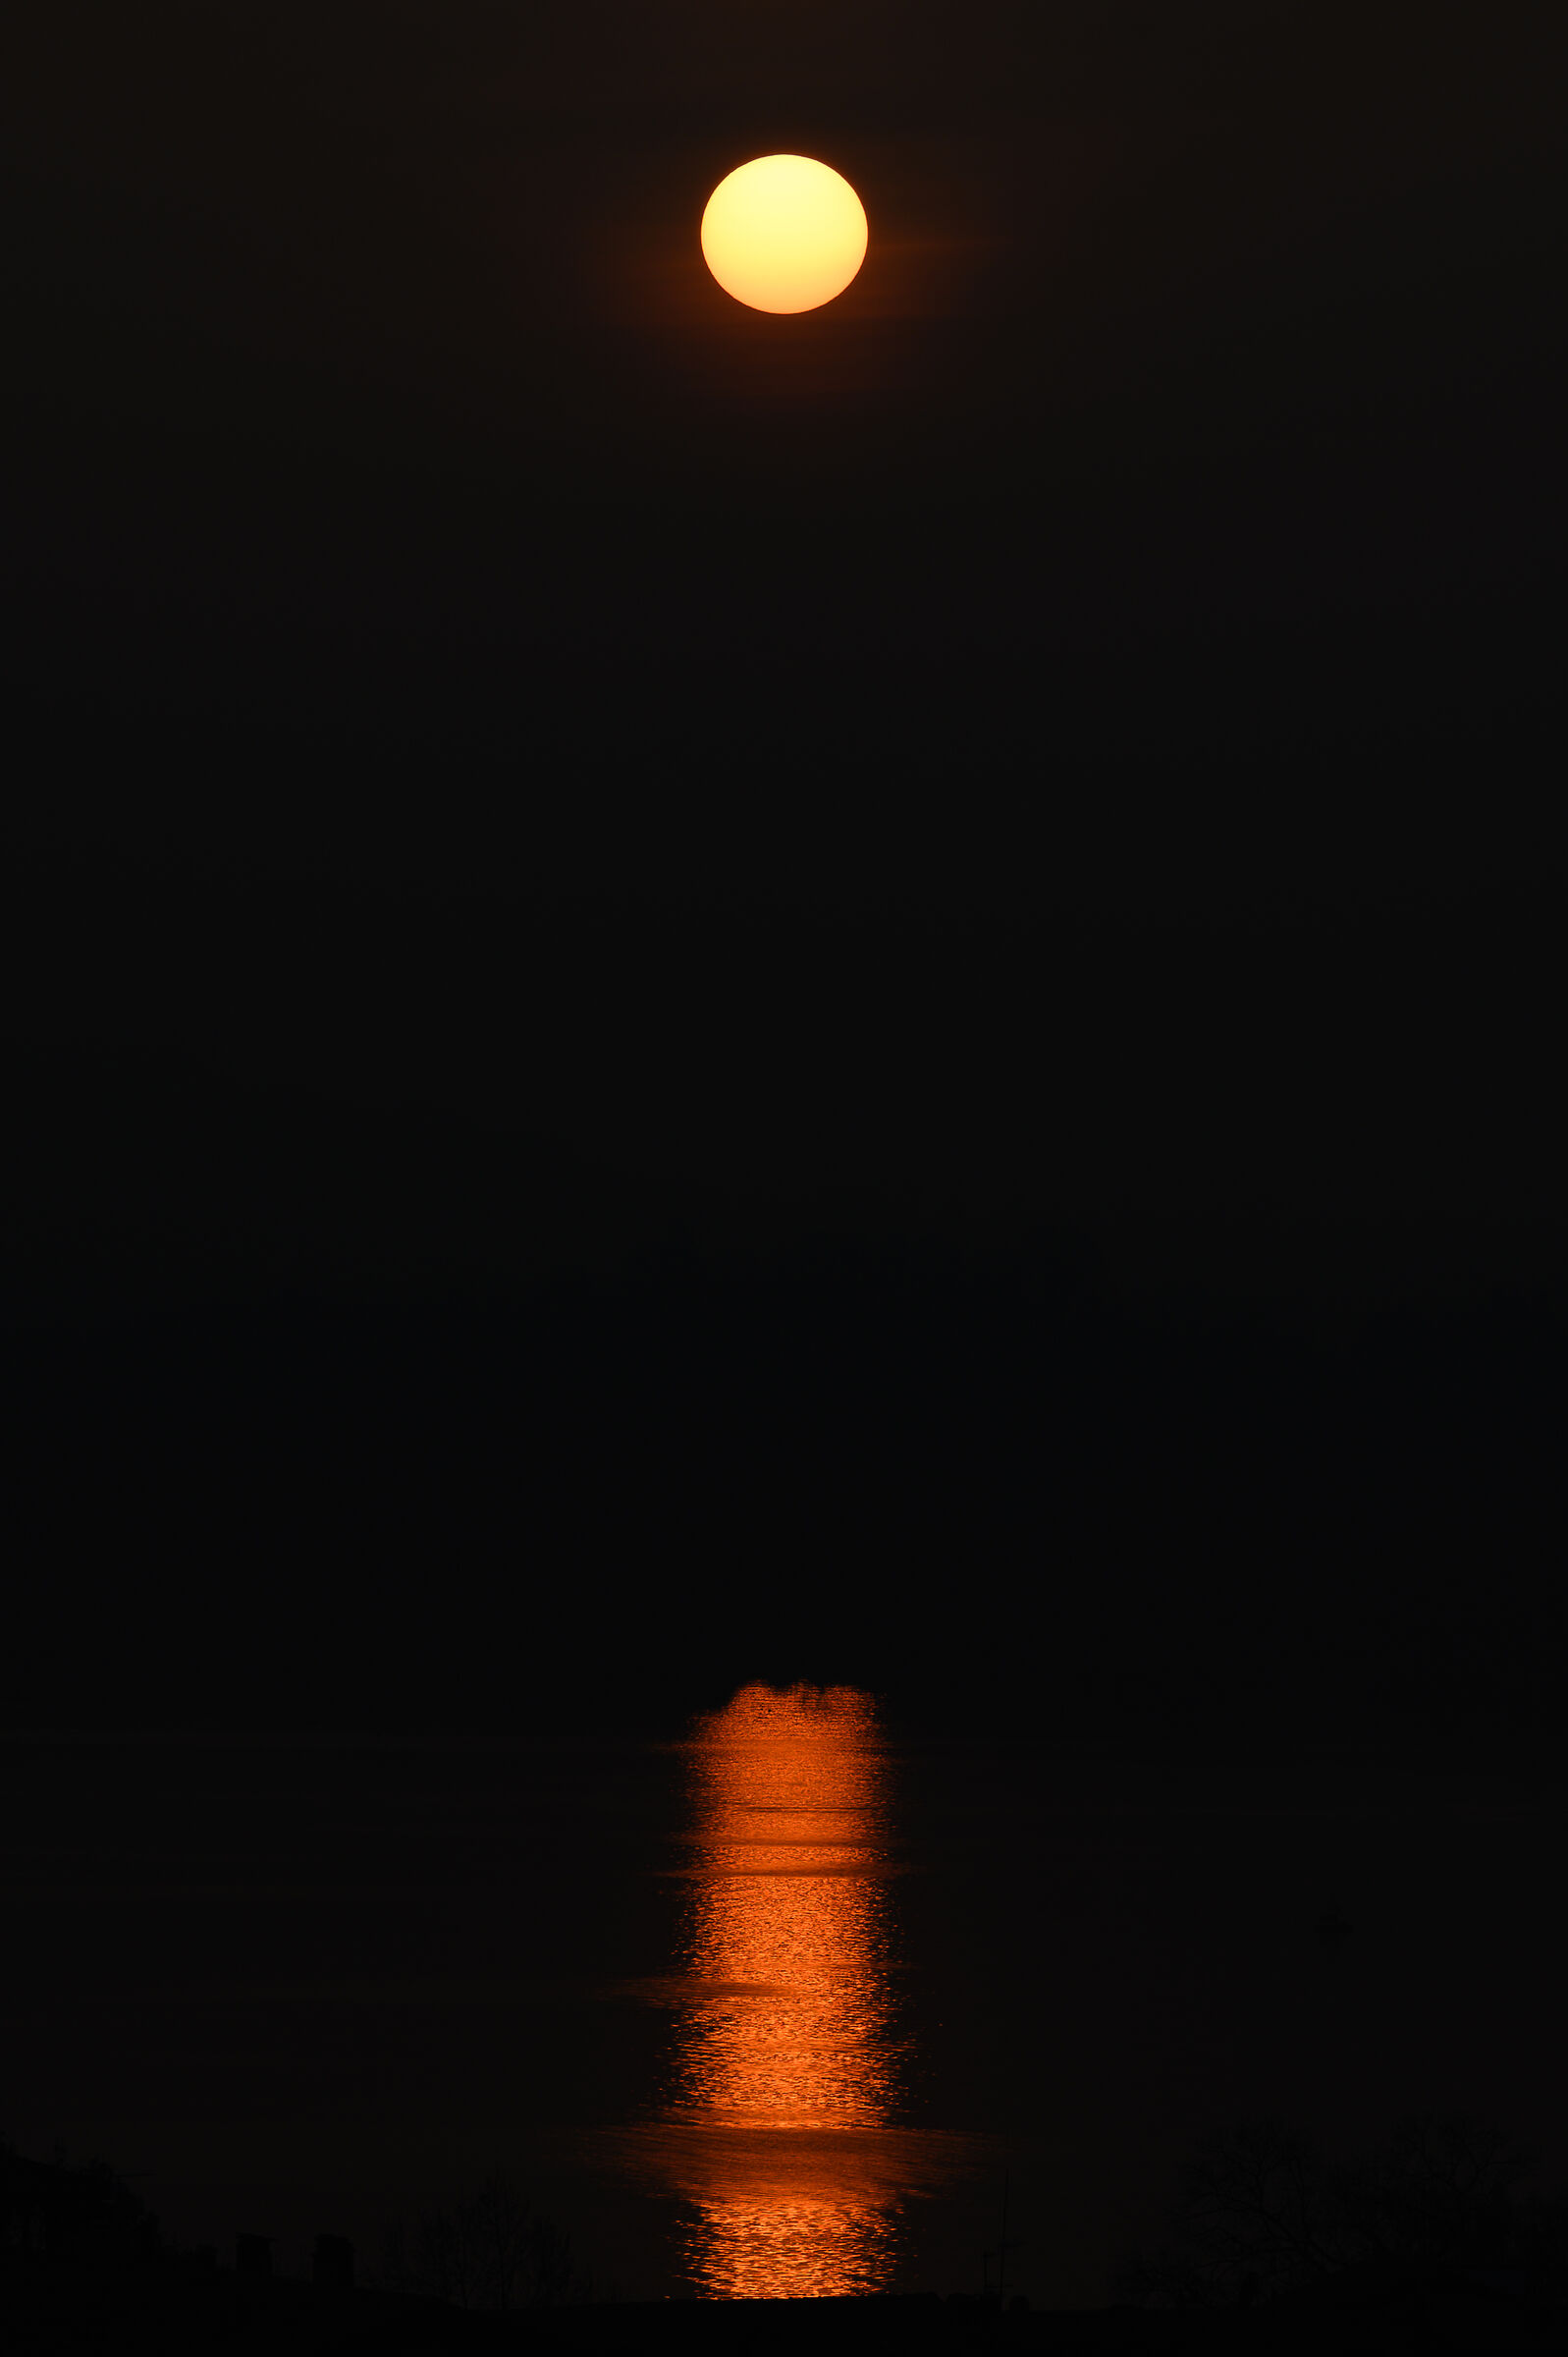 tramonto sul lago di varese...